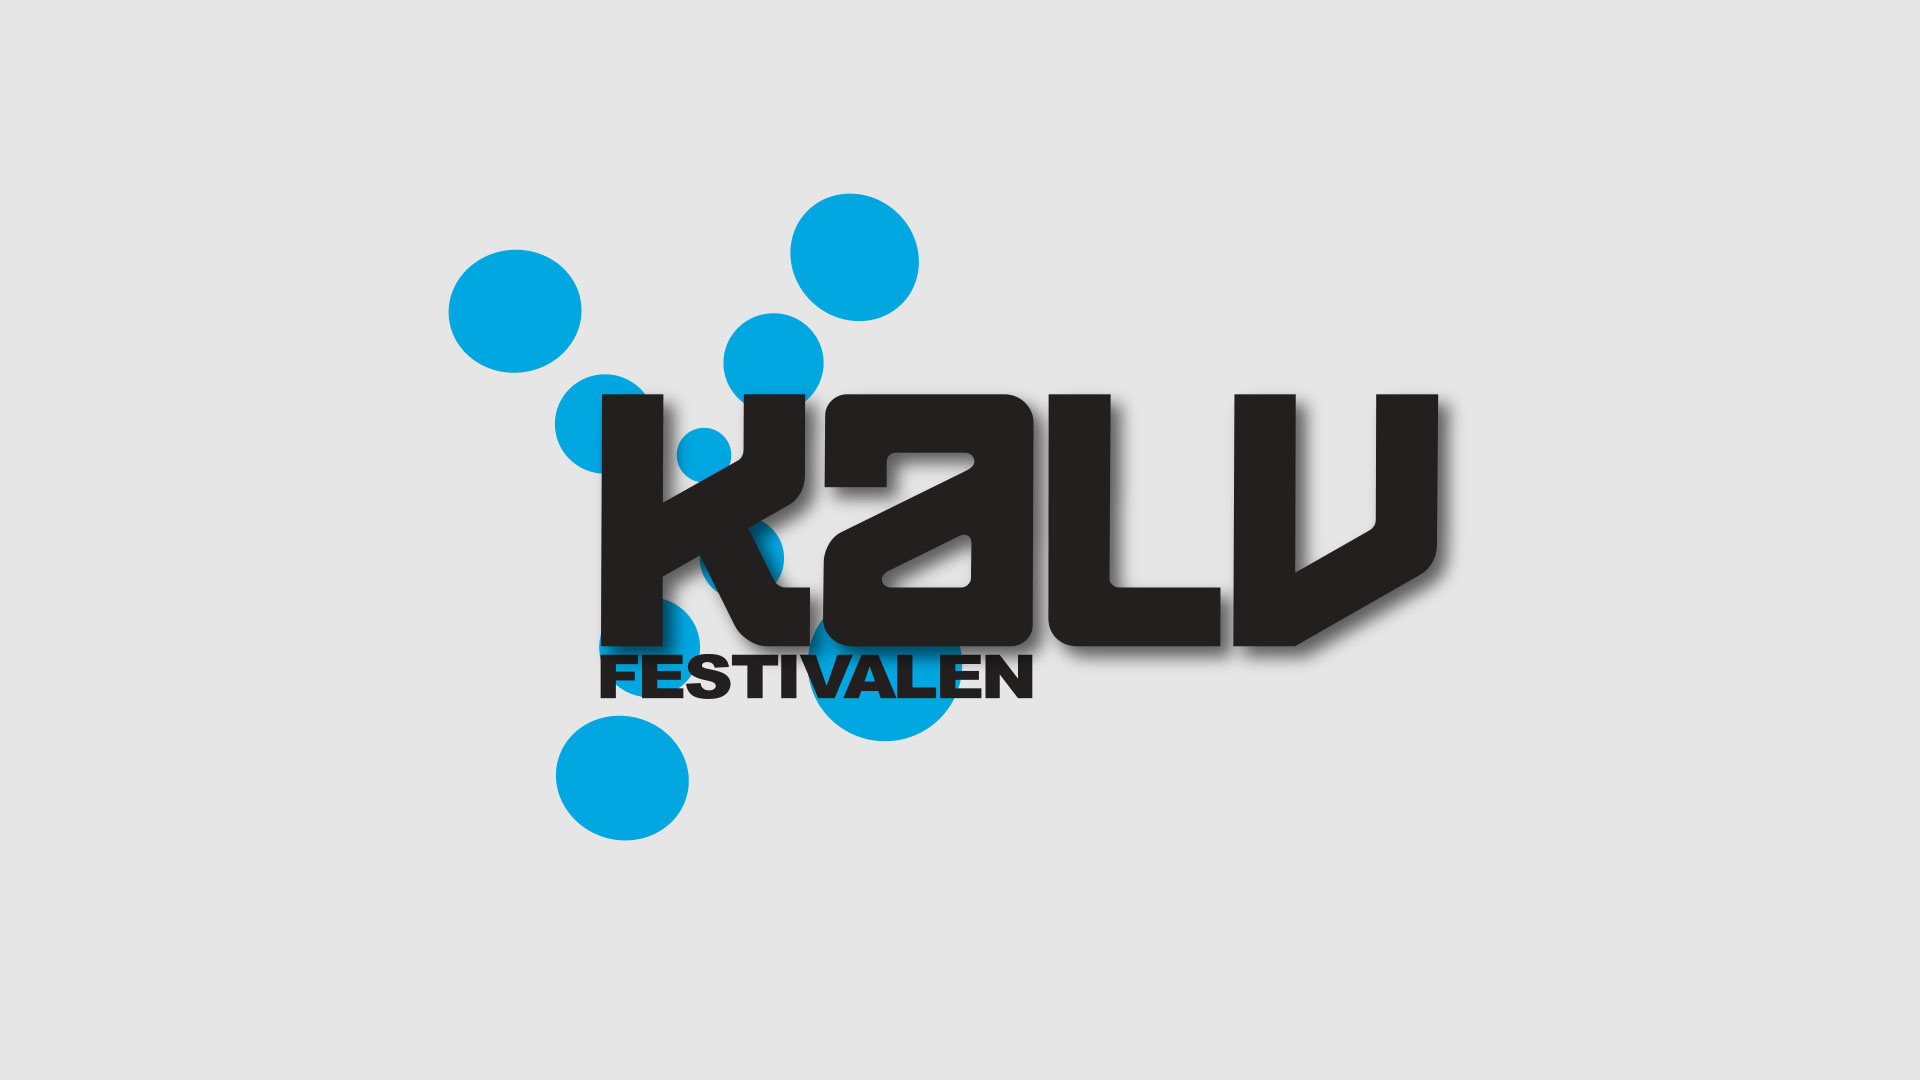 Kalvfestivalens logotyp. Design: Thomas Larsson, AD, Musik i Väst